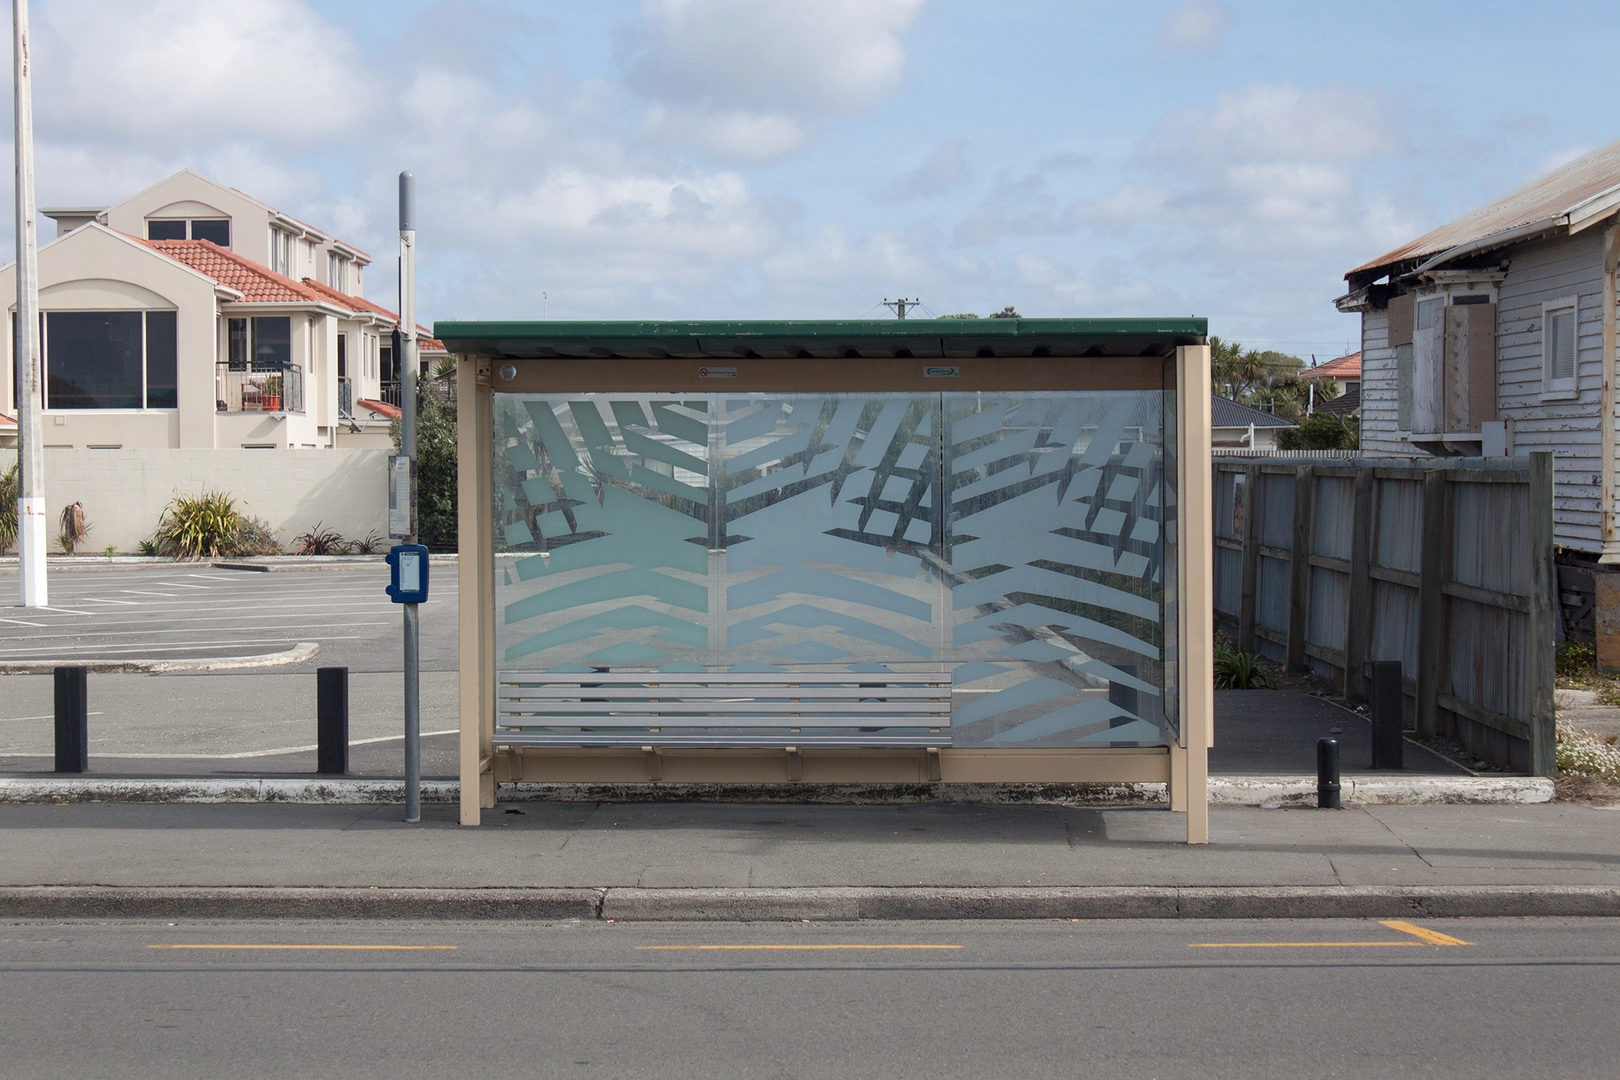 Bus stop on Marine Parade, New Brighton